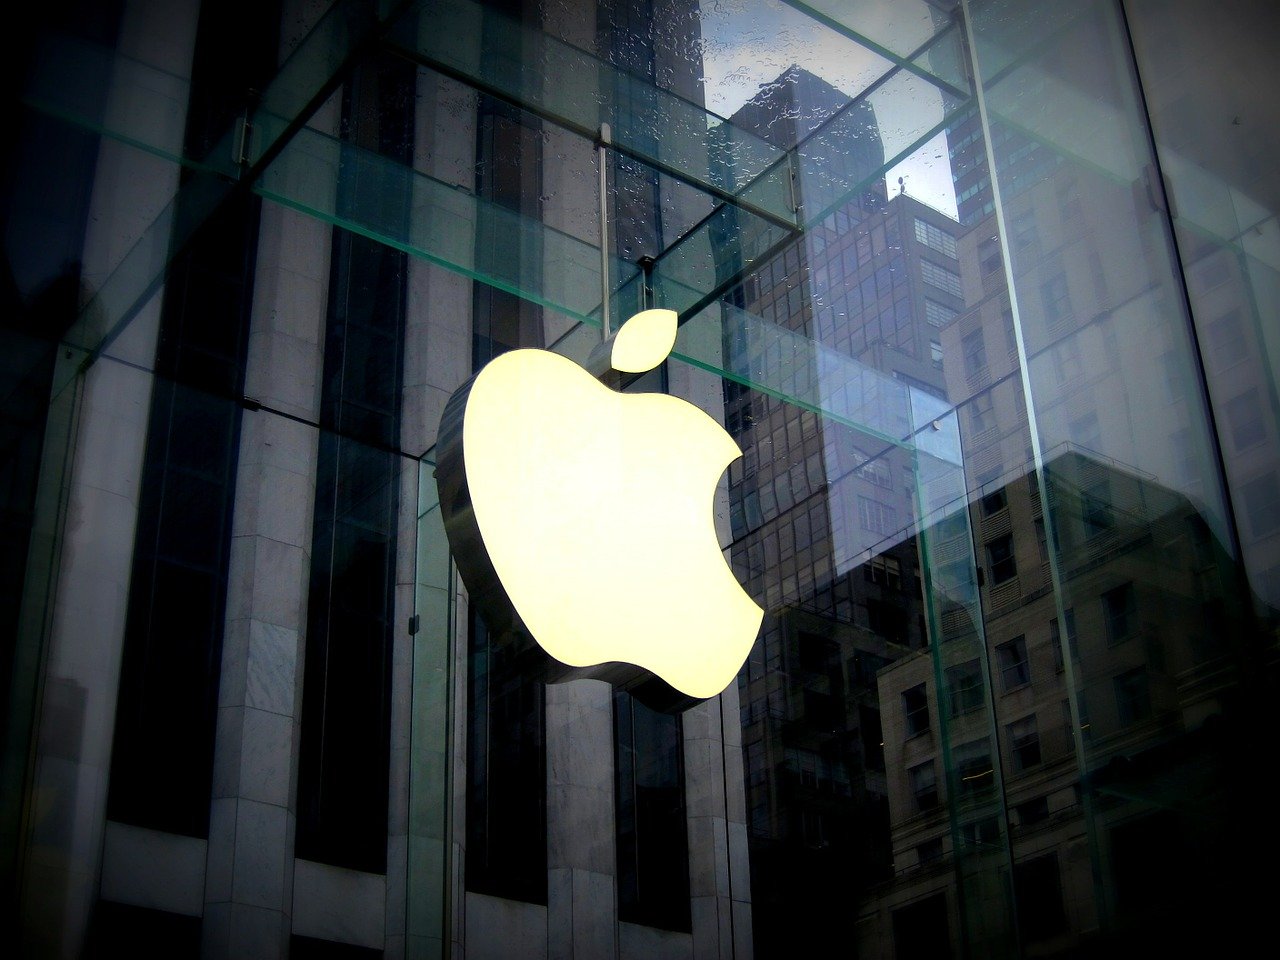  Etats-Unis : Après près d’un an de fermeture, (tous) les magasins d’Apple rouvrent leurs portes